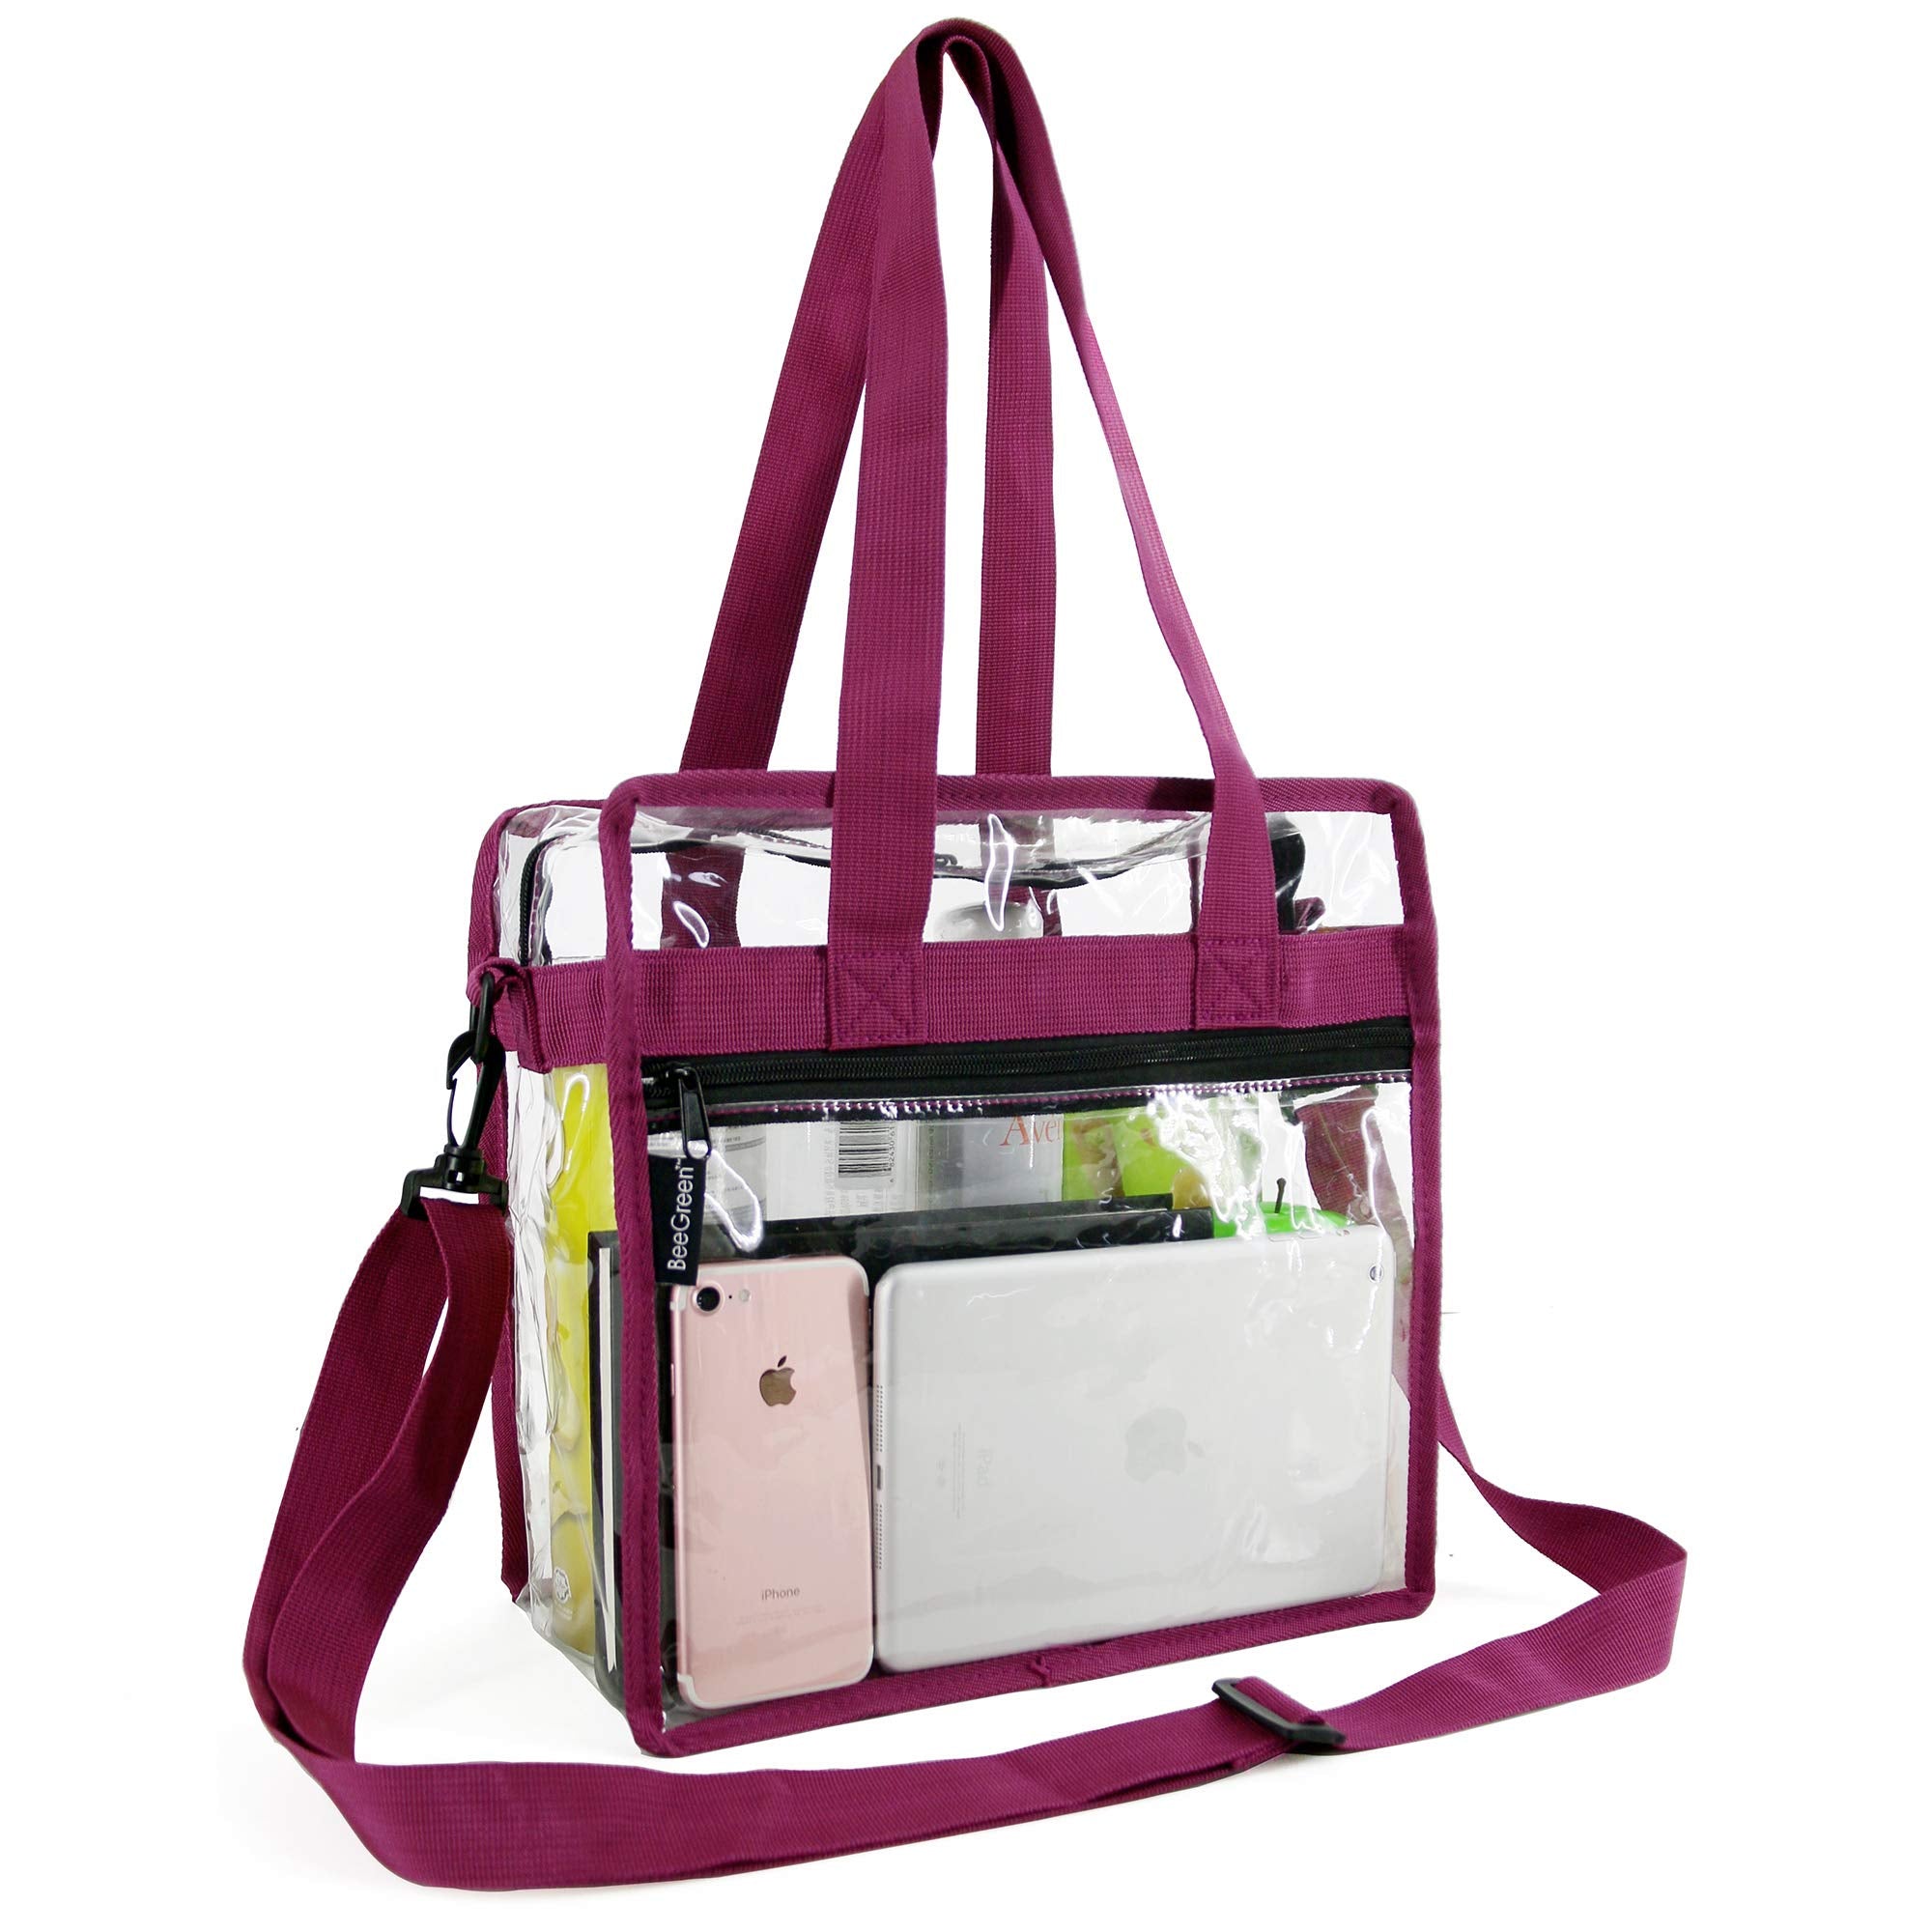 Login • Instagram  Bags, Strap, Perfect bag